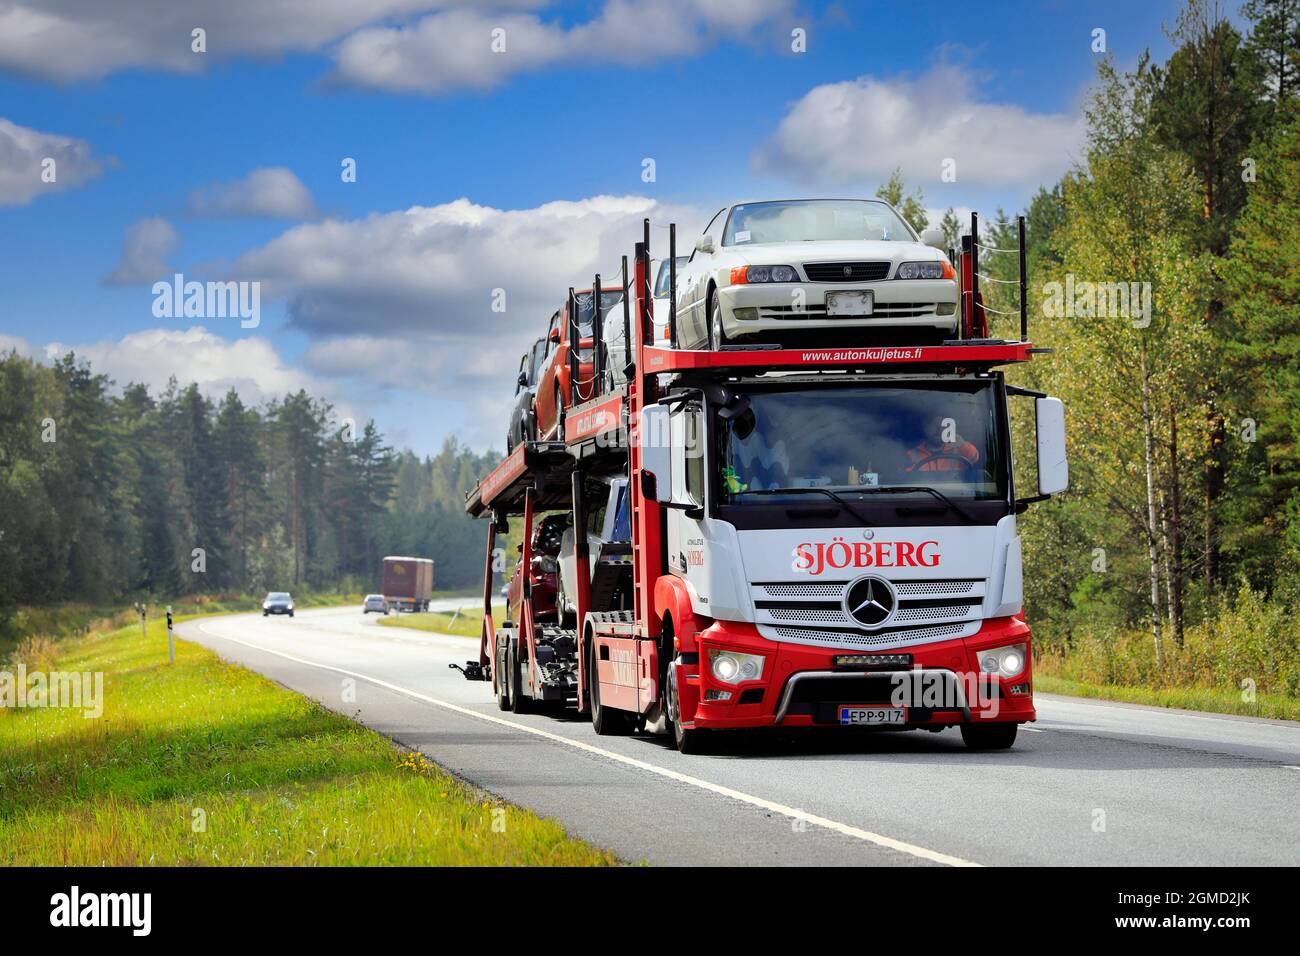 Mercedes-Benz Transporter-Lkw Sjoberg Autonkuljetus Oy schleppt an einem sonnigen Herbsttag Autos auf der Straße 25. Raasepori, Finnland. 9. September 2021. Stockfoto